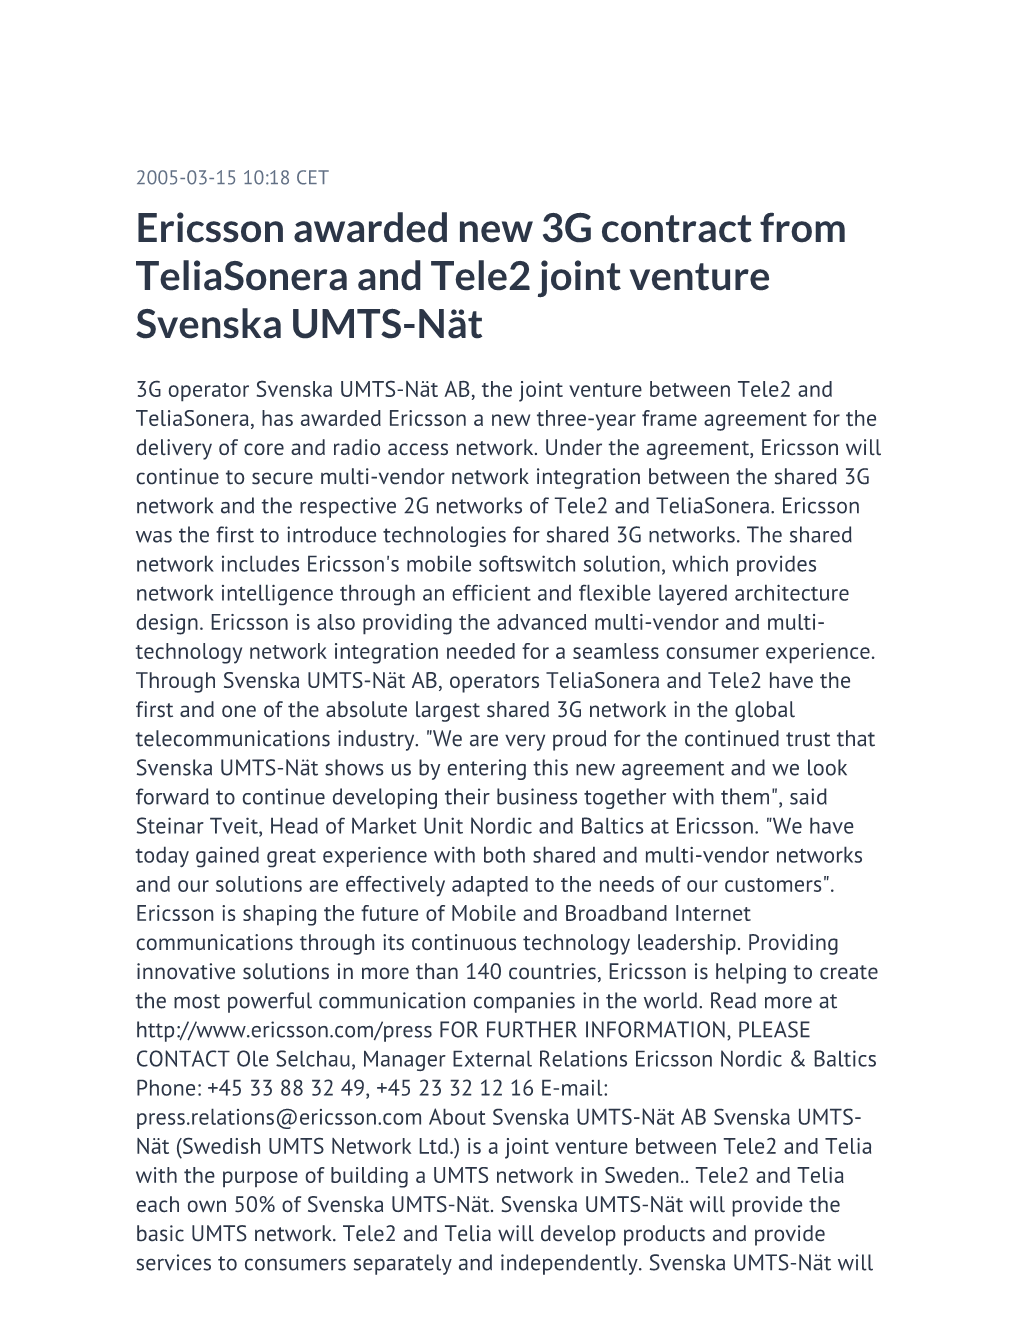 Ericsson Awarded New 3G Contract from Teliasonera and Tele2 Joint Venture Svenska UMTS-Nät